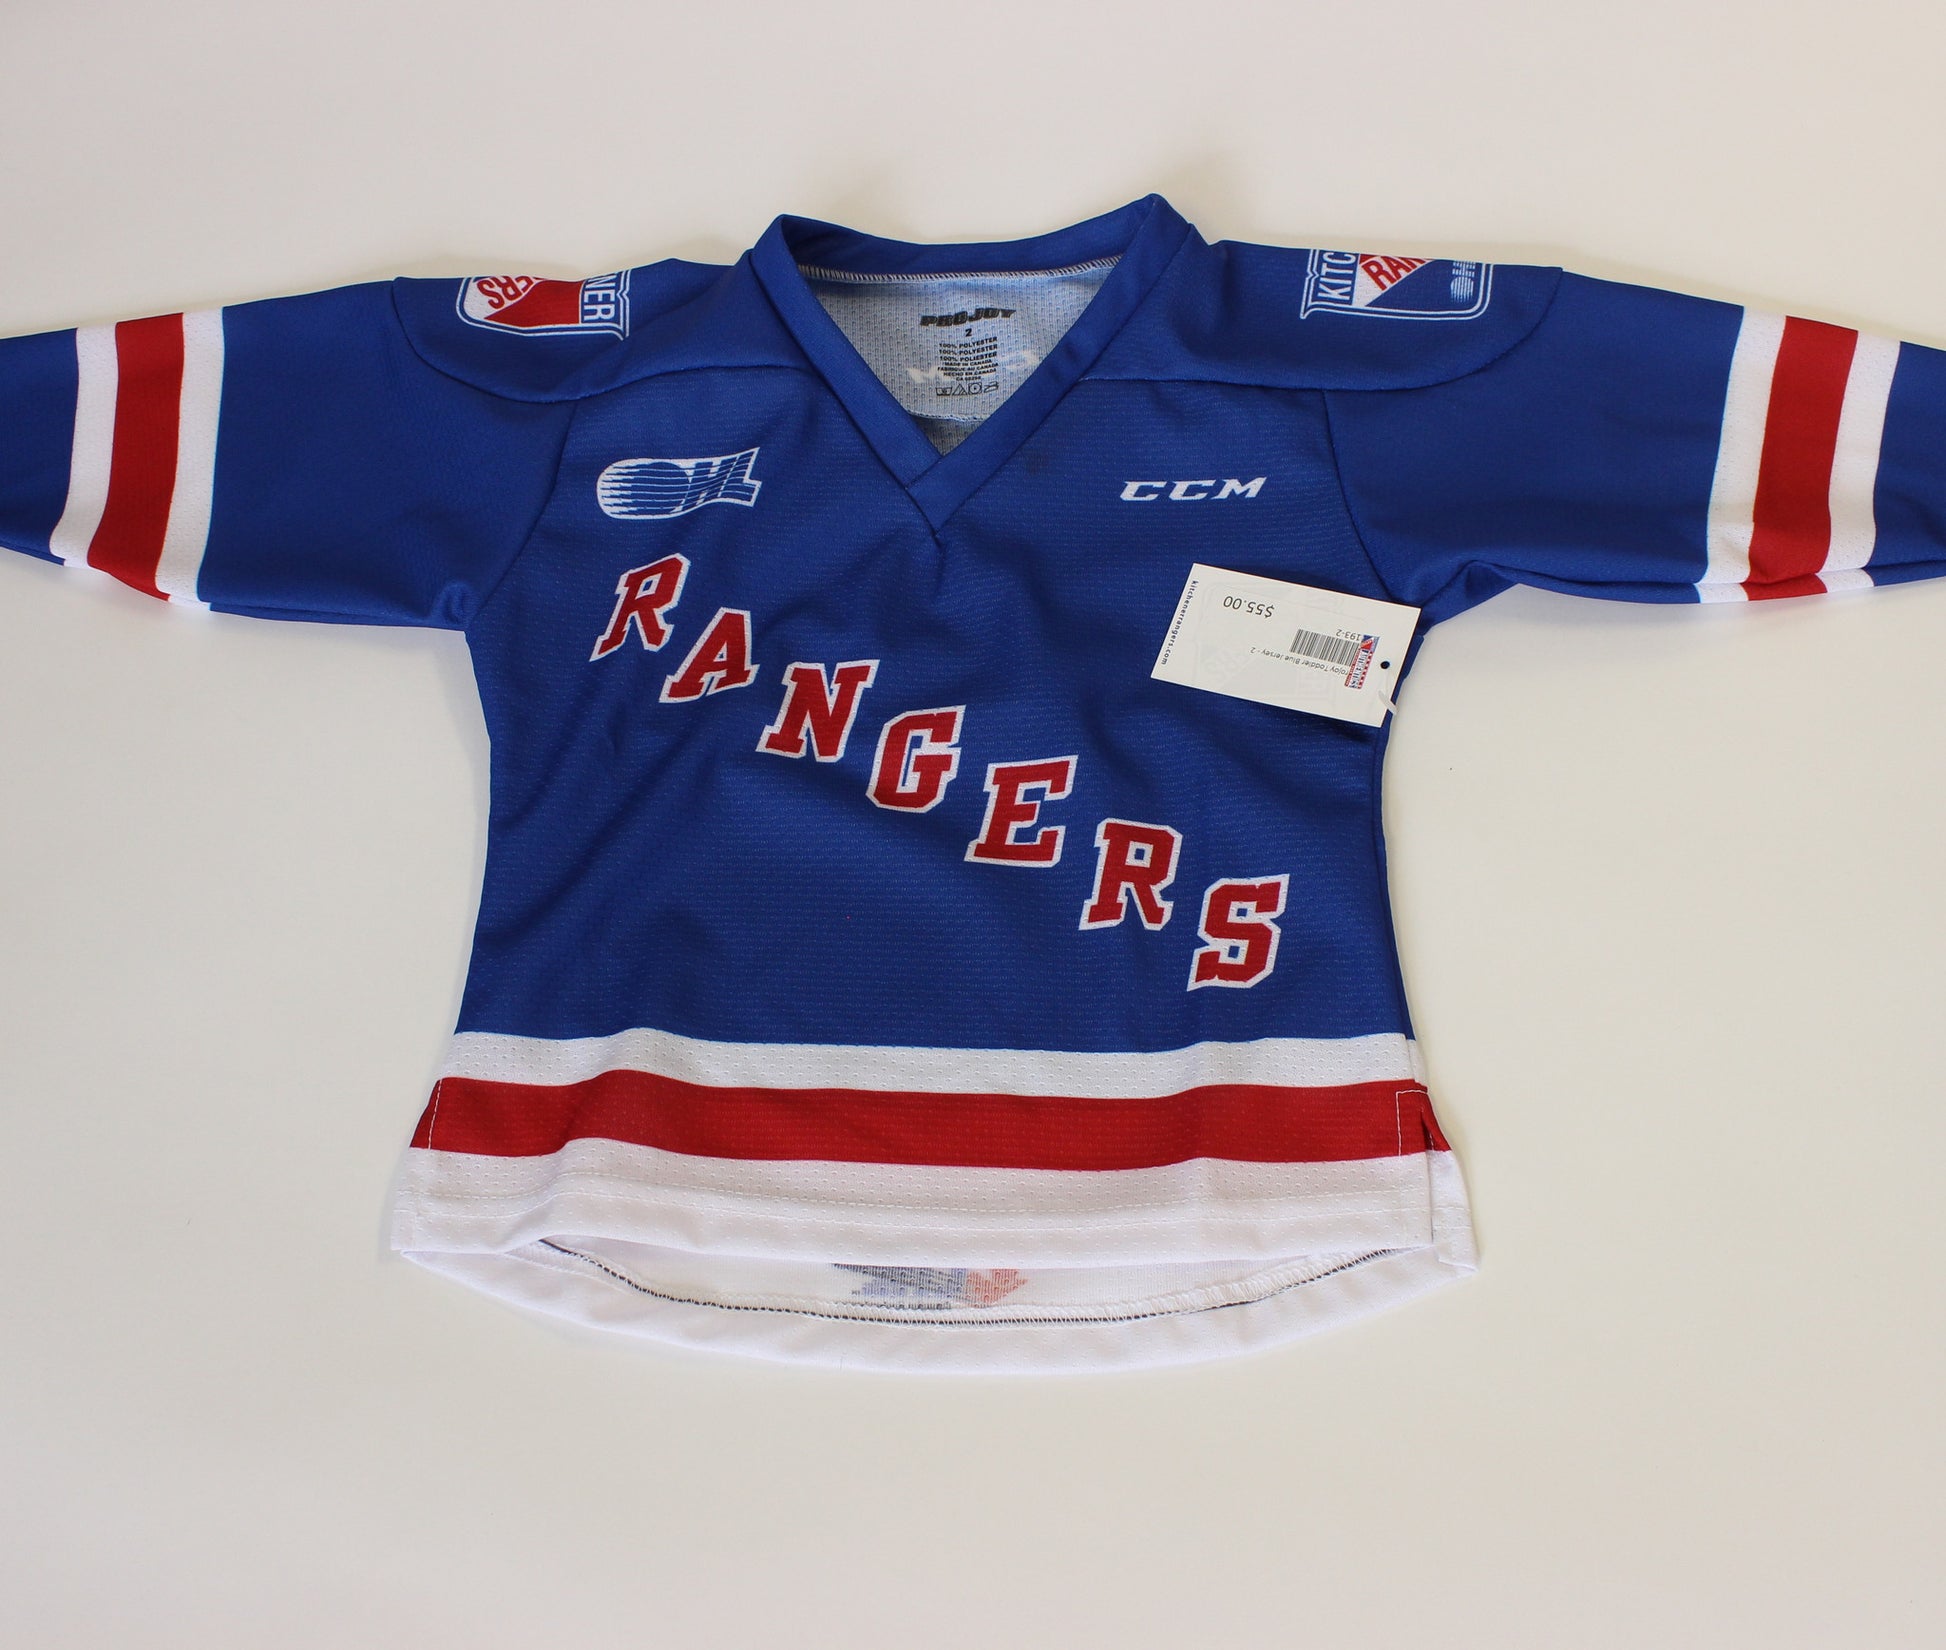 Projoy/CCM Toddler Blue Jersey - Rangers Authentics